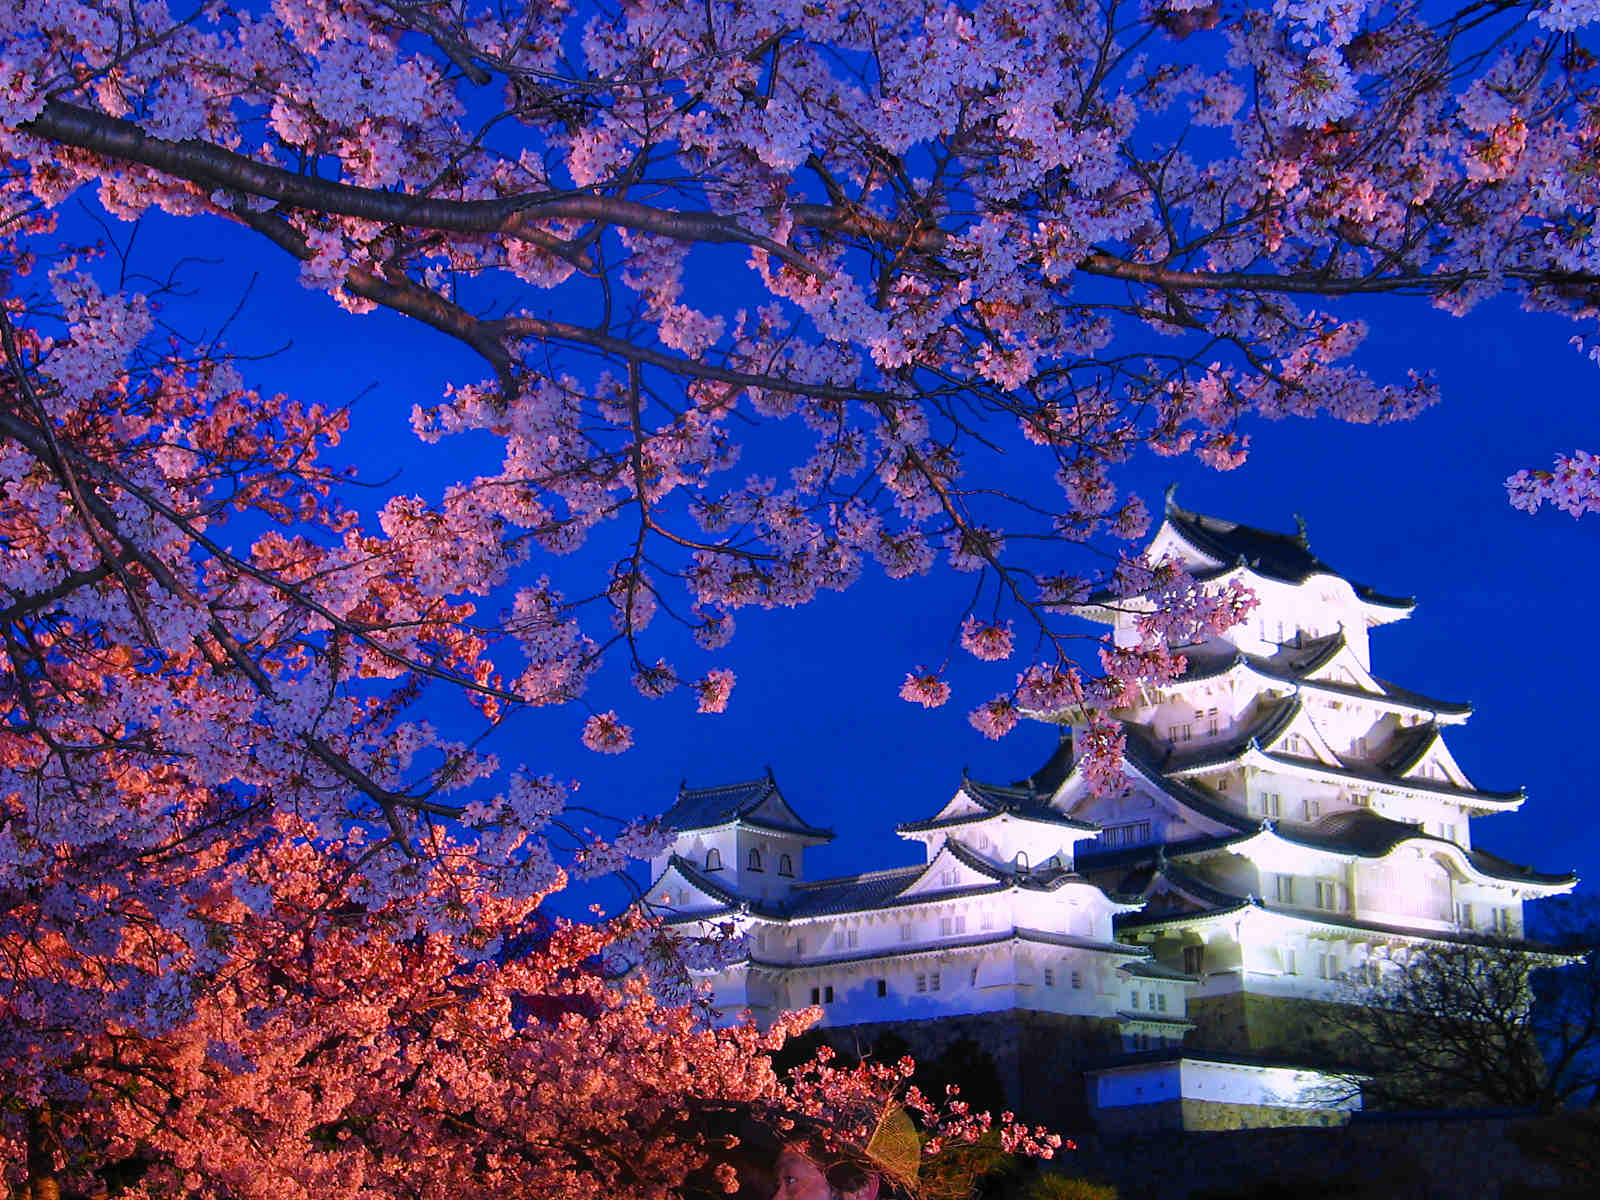 姫路城夜桜会18 花あかり 姫路城と桜のライトアップ